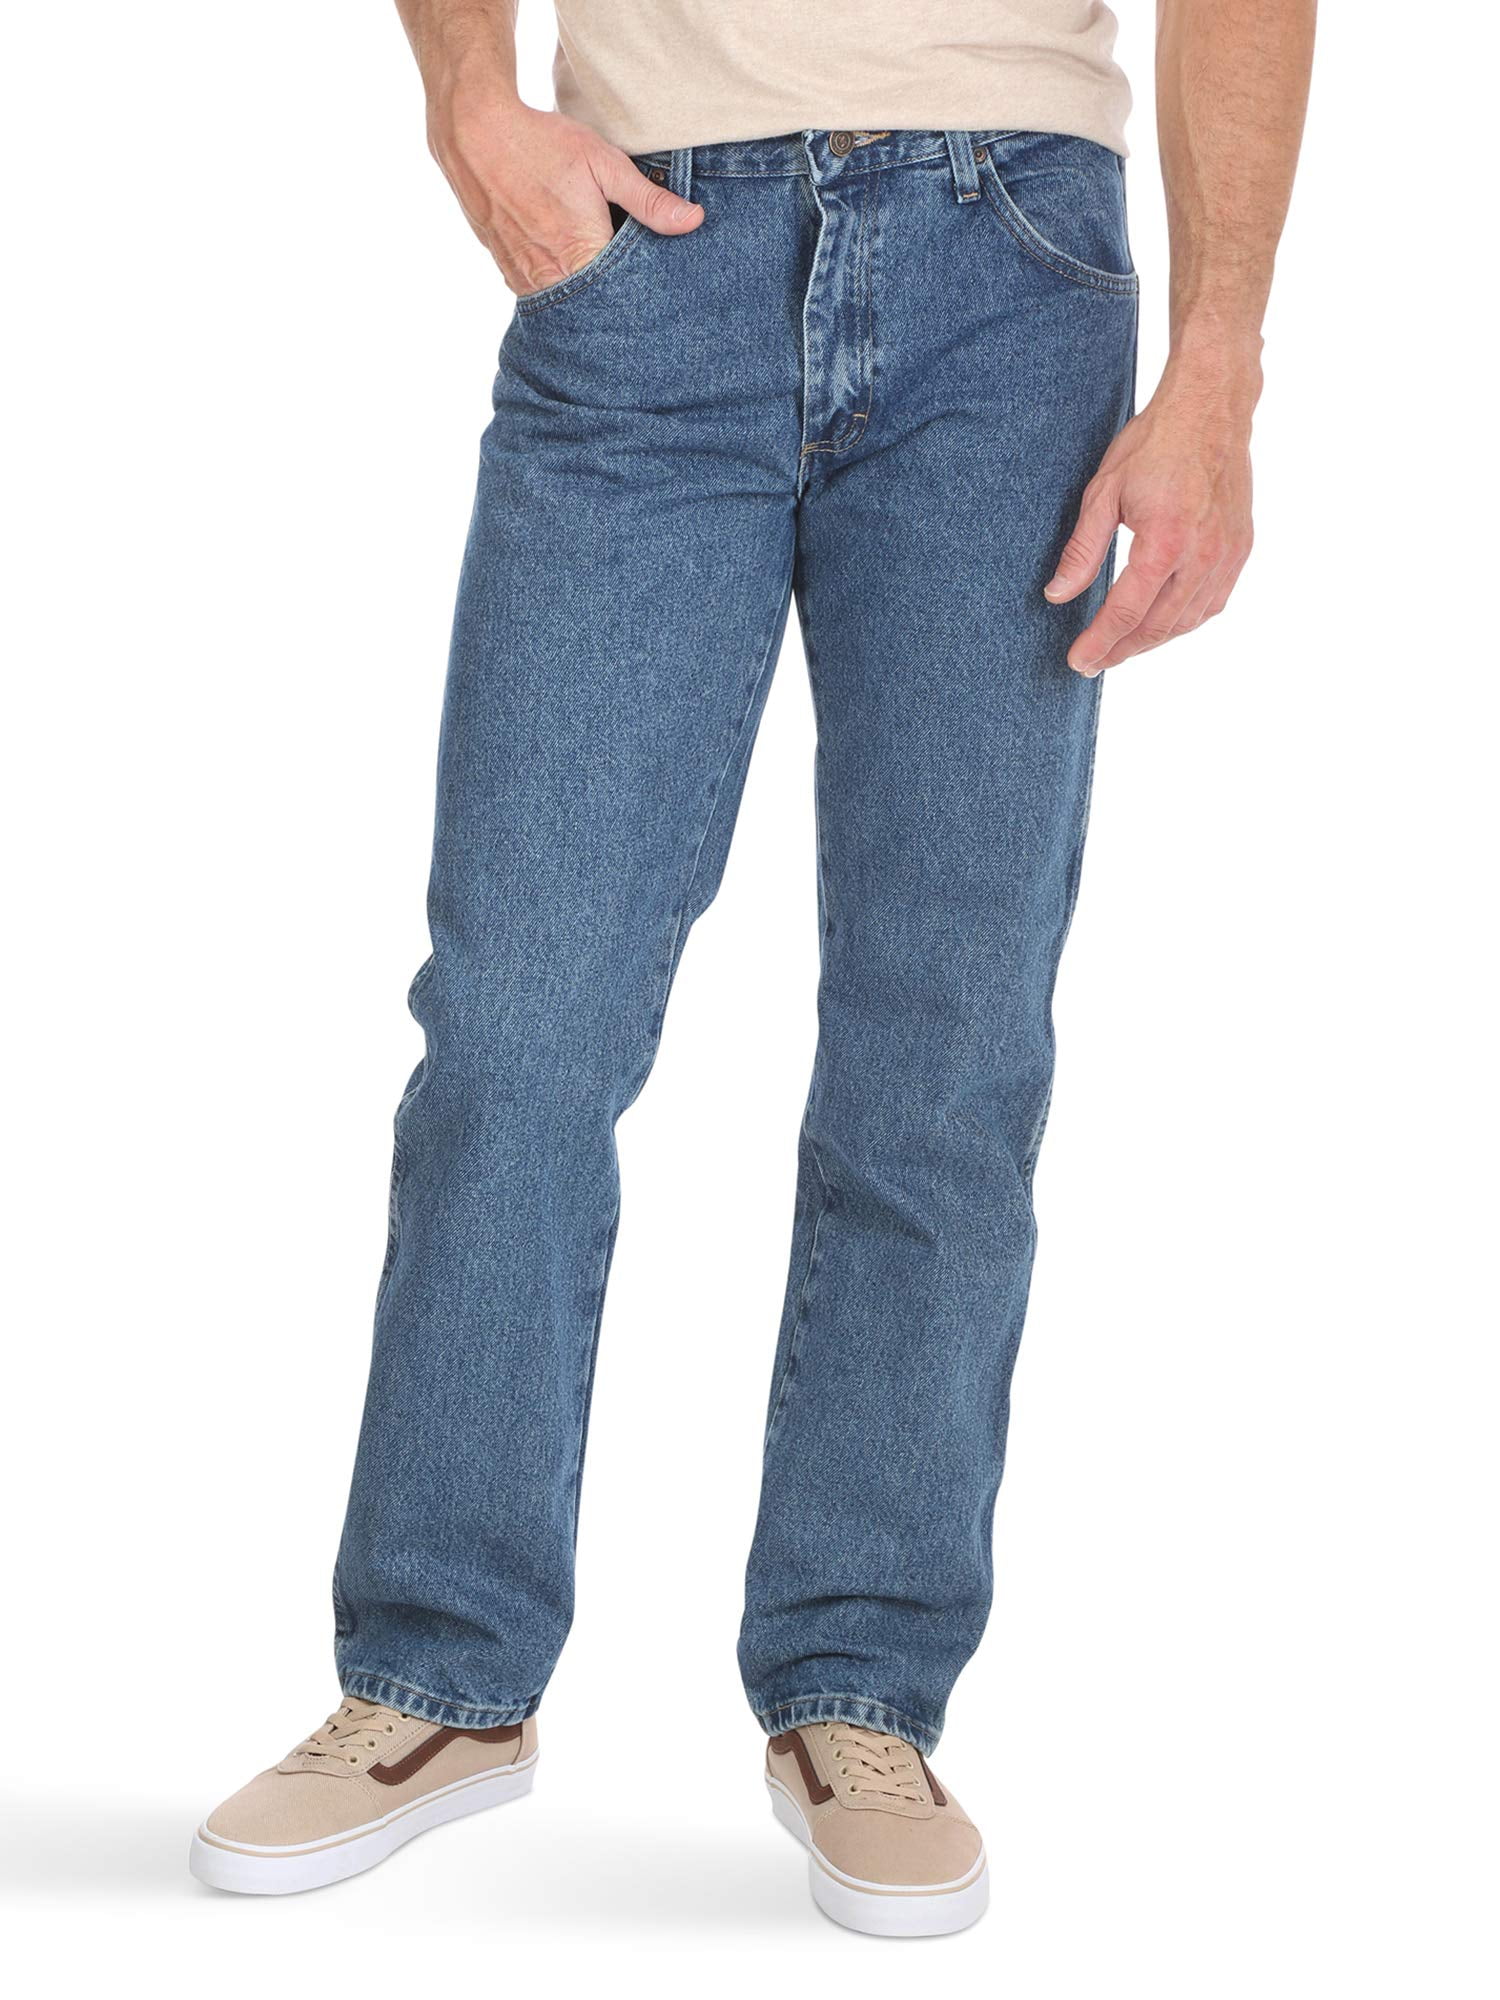 W32 L32 New Mens WRANGLER Straight Jeans Waist 32 Length 32 